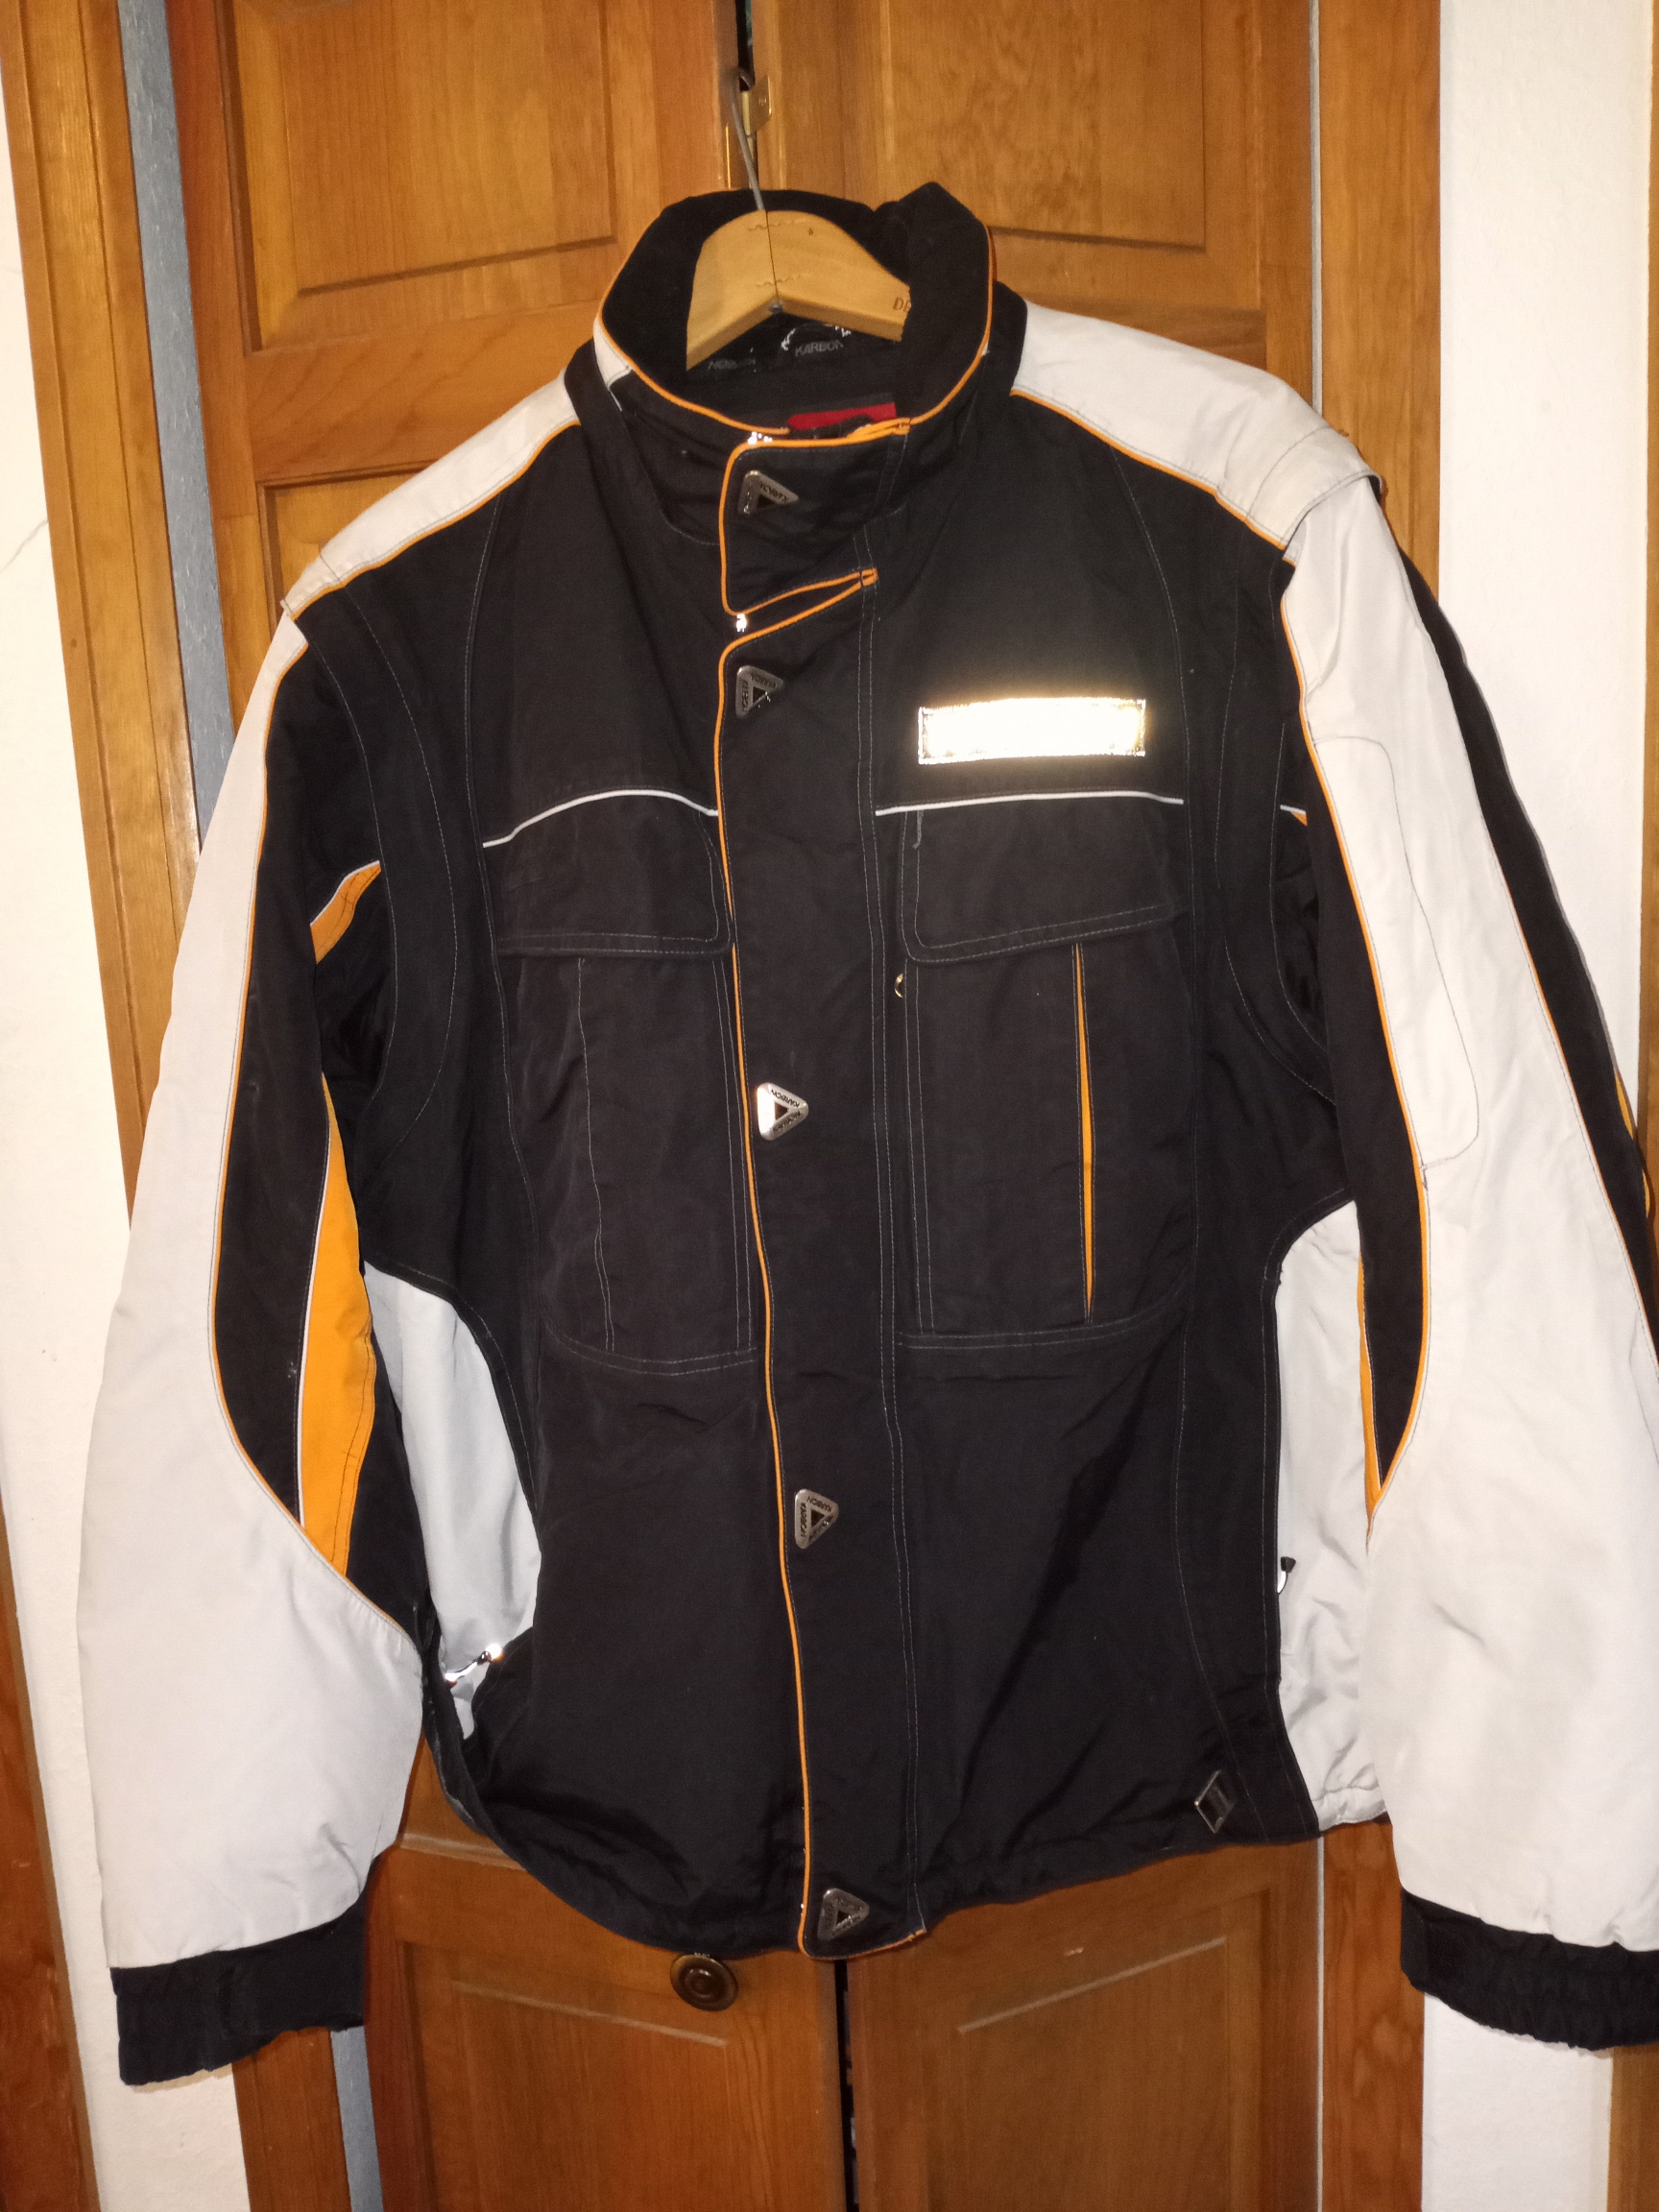 Karbon Men's Ski jacket large